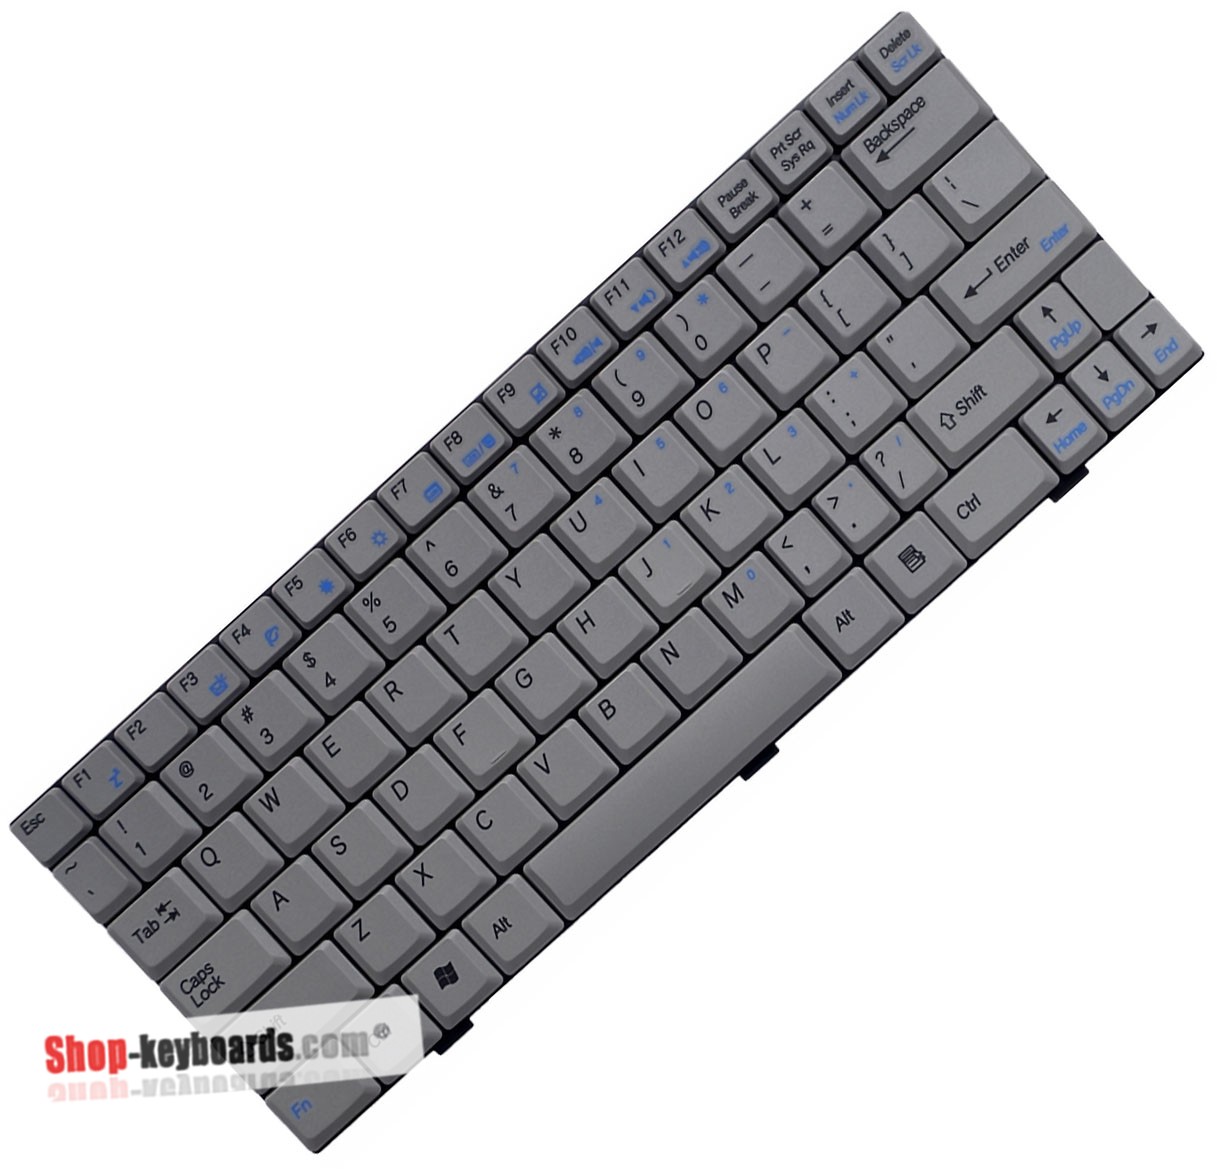 Asus 04GNEA1KUS00 Keyboard replacement